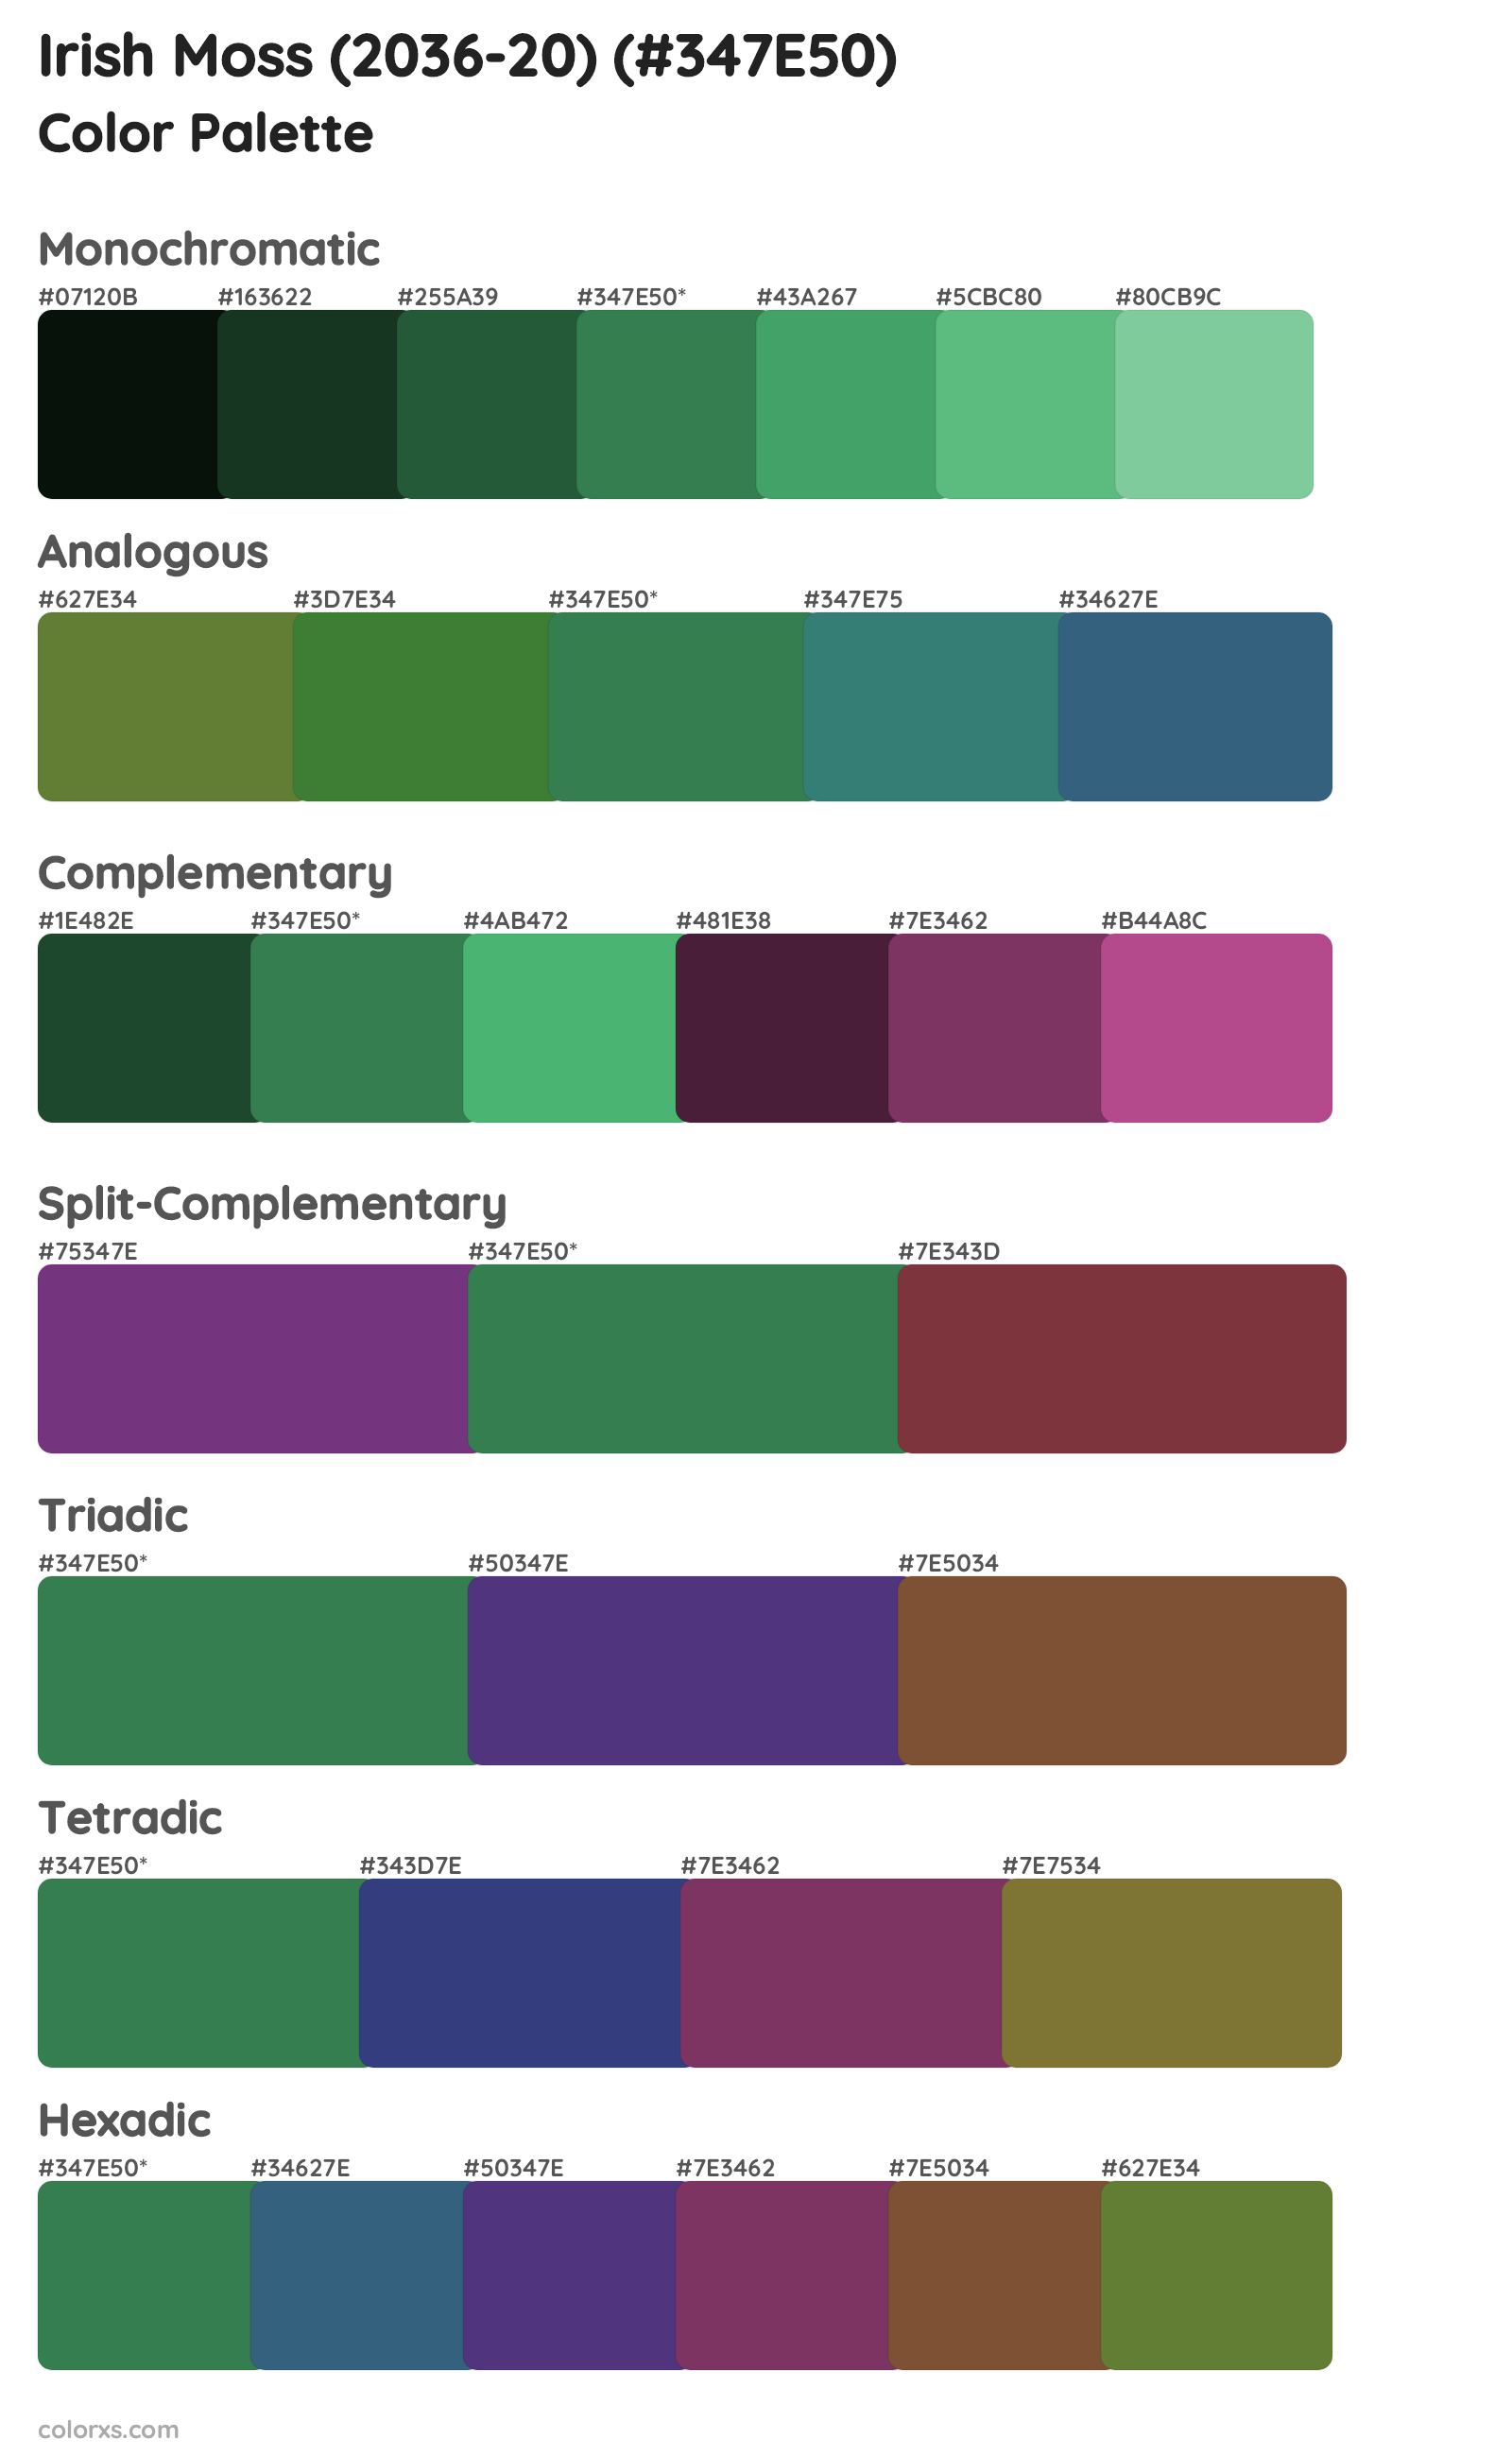 Irish Moss (2036-20) Color Scheme Palettes